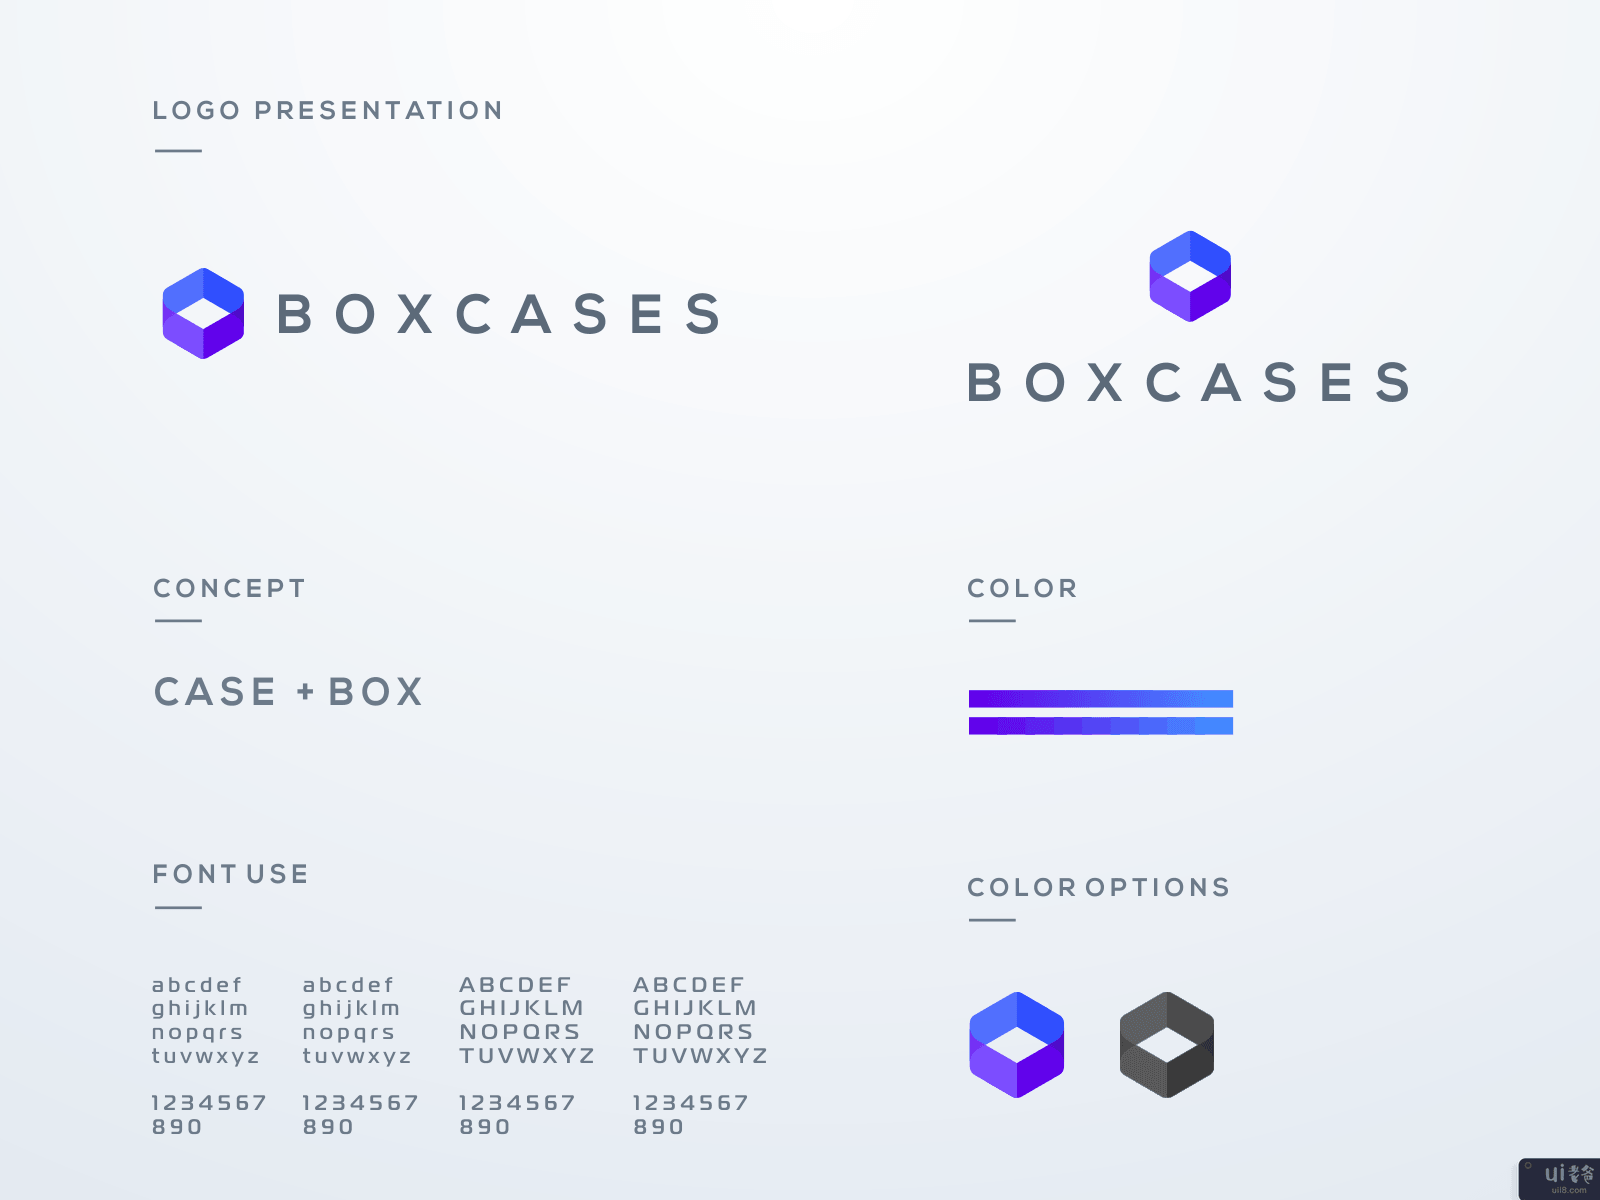 盒式集装箱的标志设计(Boxcases logo design)插图1